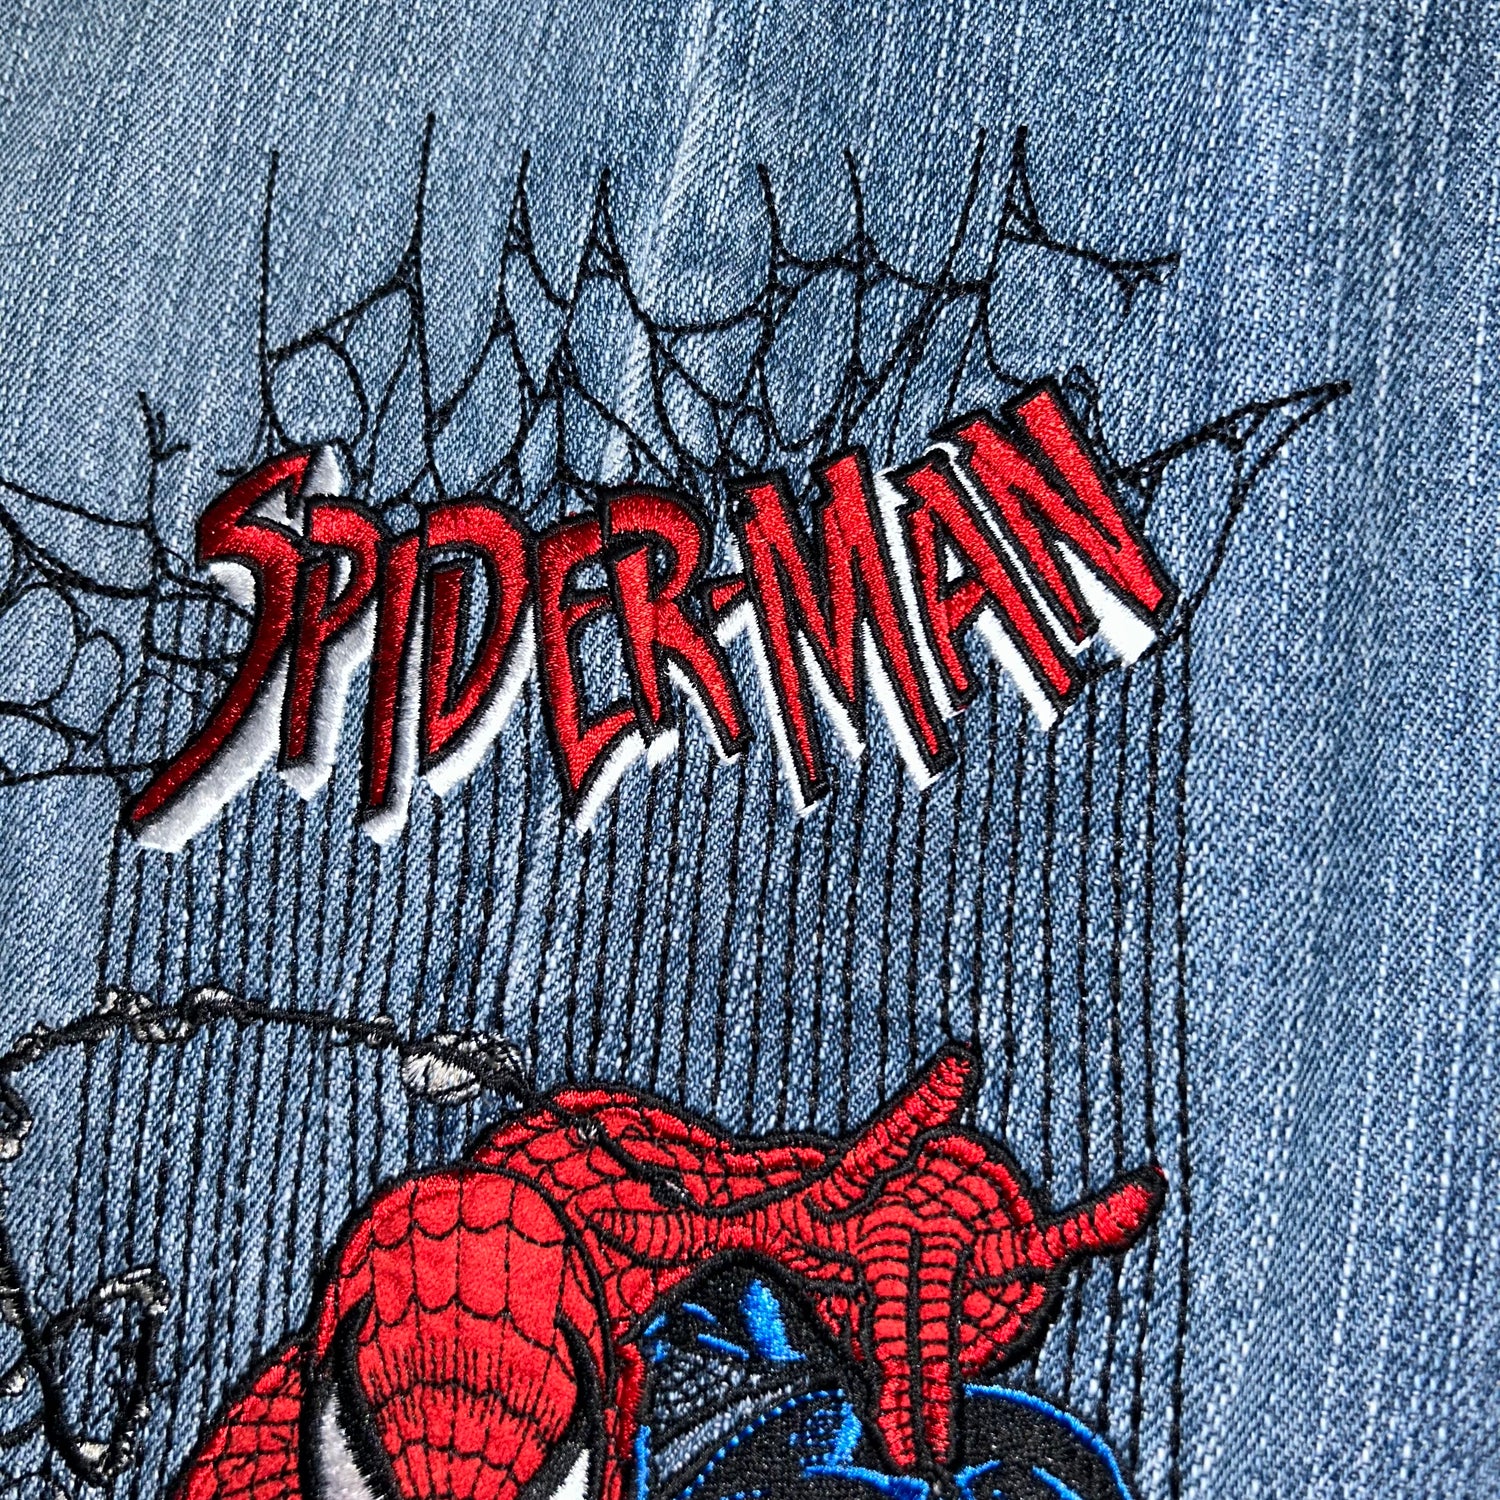 Baggy Jeans Johnny Blaze Spider-Man Marvel Vintage  (34 USA  L)